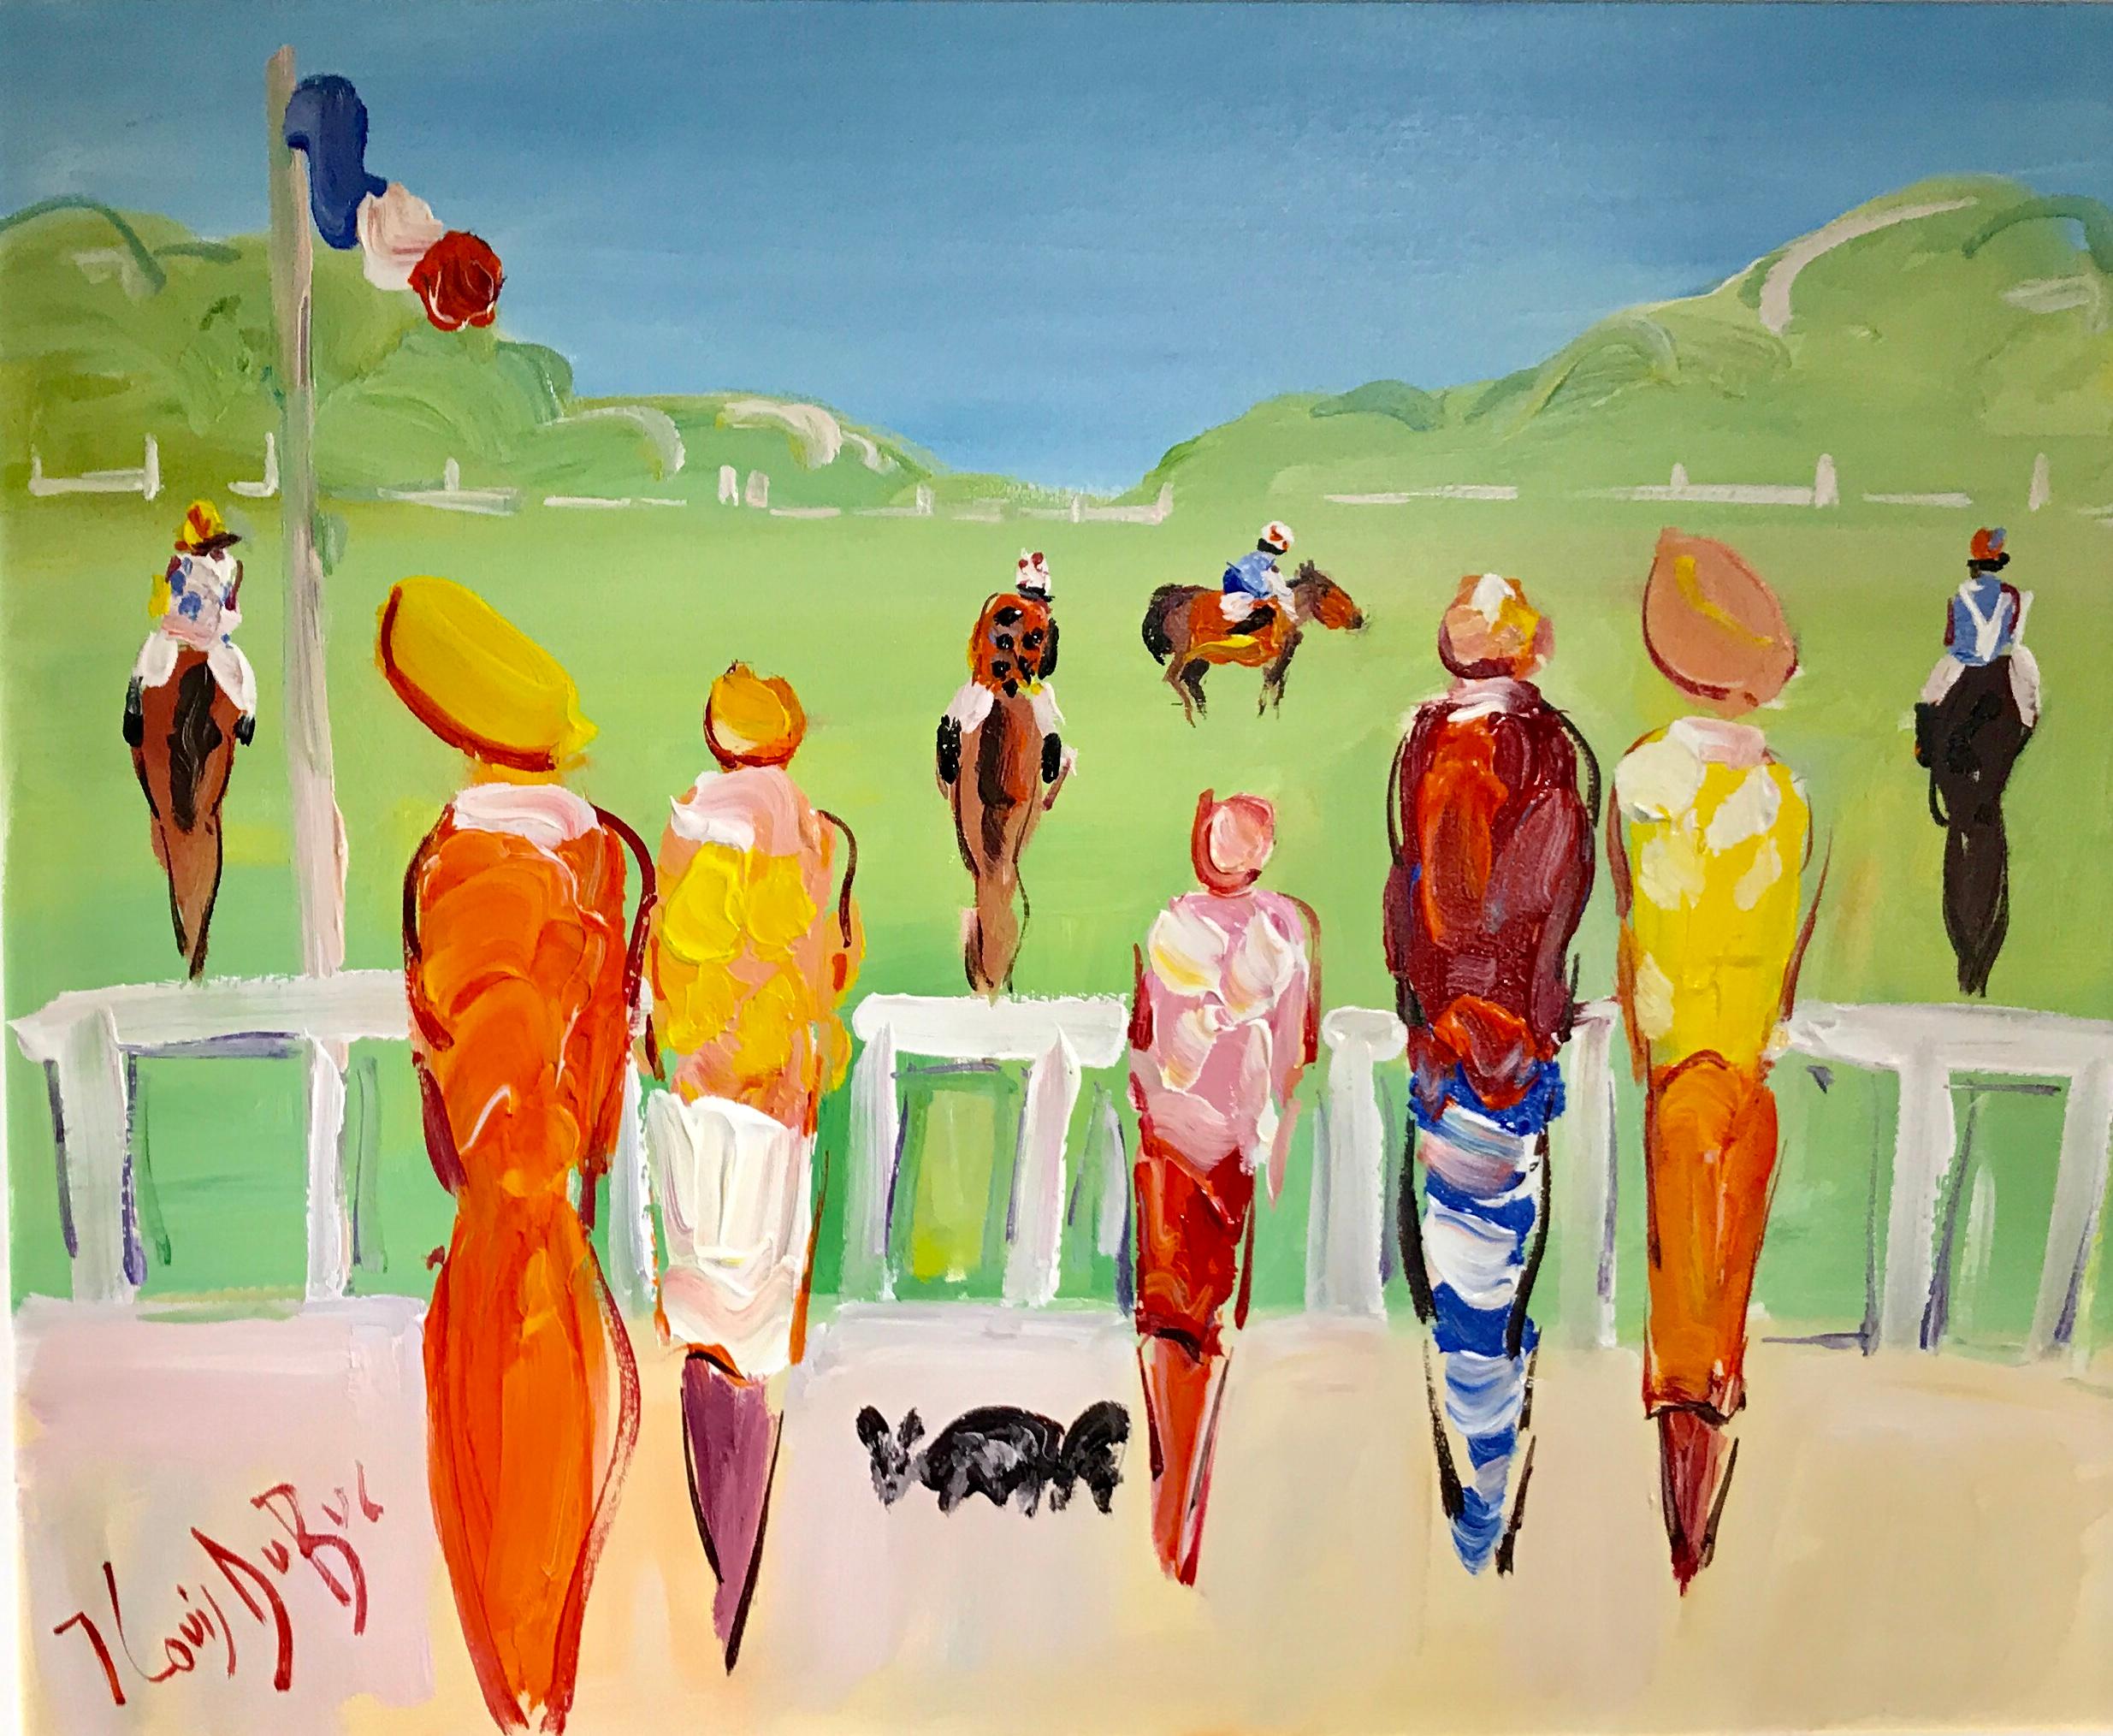 'Aux Courses' est une peinture figurative de taille moyenne encadrée à l'huile sur toile créée par l'artiste français Jean-Louis Dubuc au 21e siècle. Avec une palette lumineuse composée principalement de tons verts, orange, rouges, jaunes et bleus,